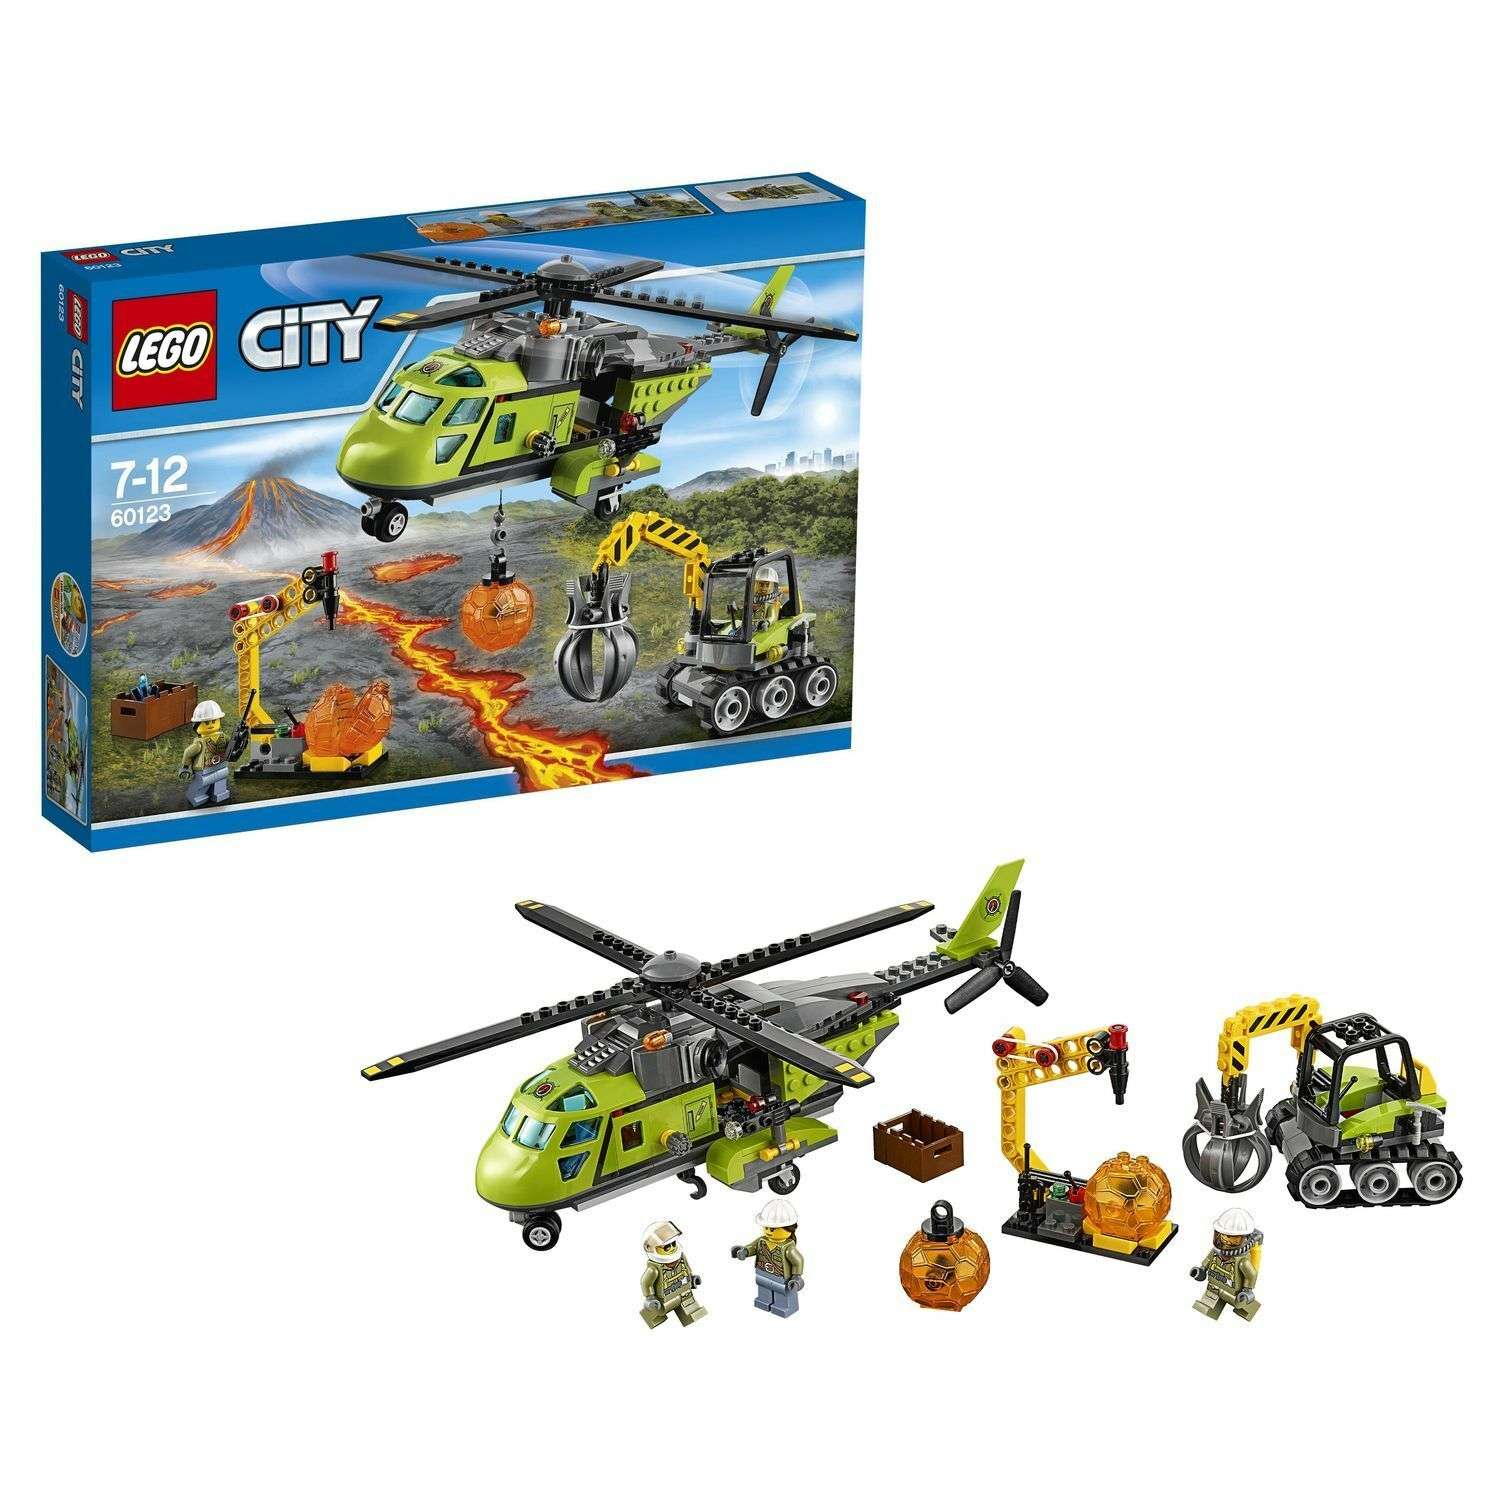 Конструктор LEGO City Volcano Explorers Грузовой вертолёт исследователей вулканов (60123) - фото 1